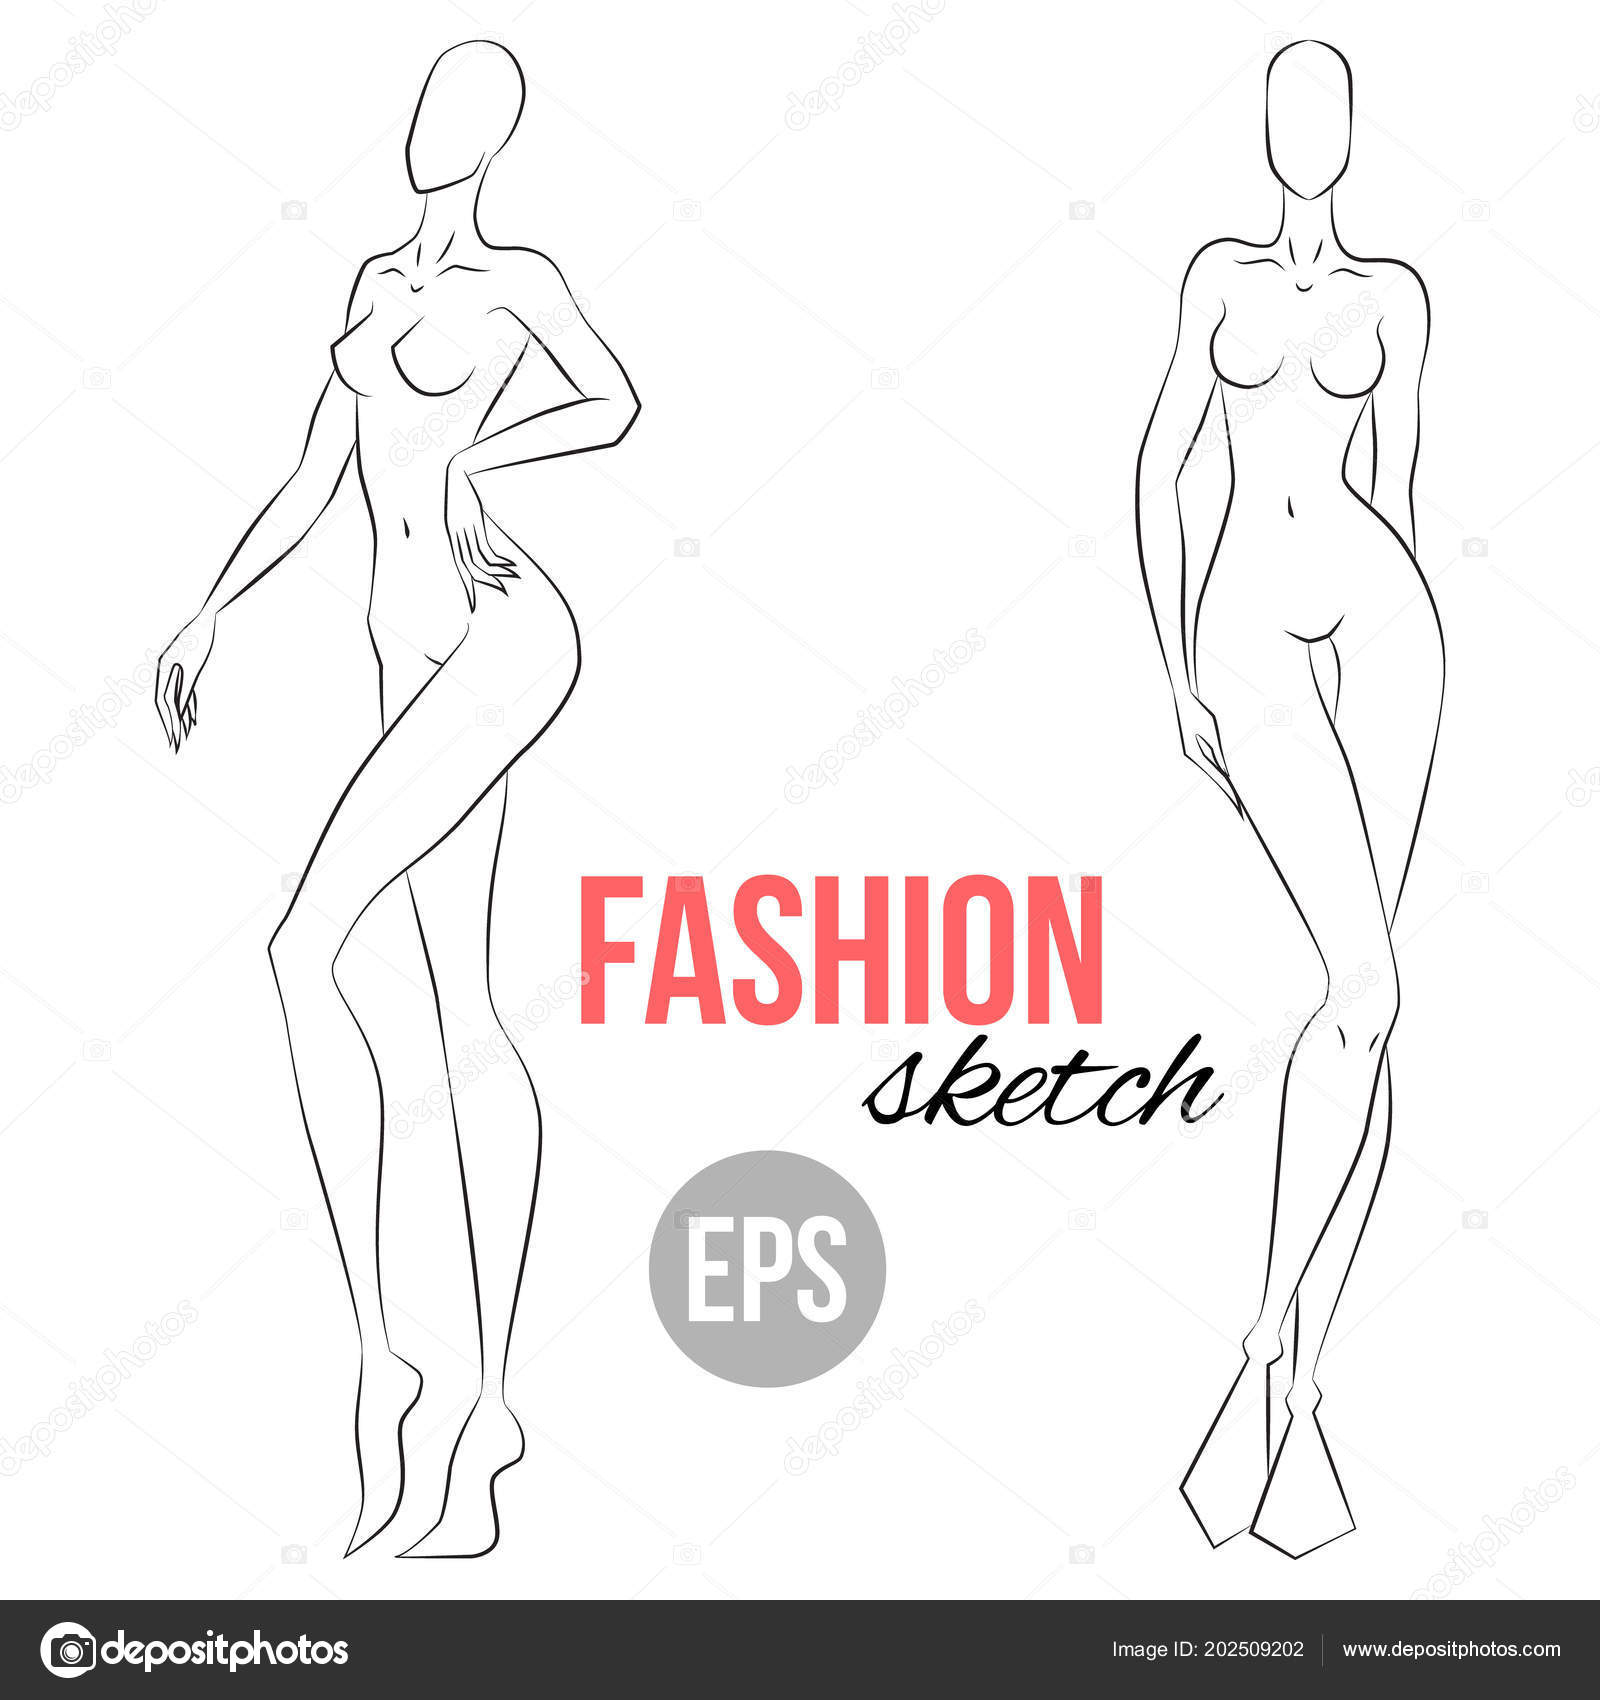 Focus Techniques - Figure Drawing - Martel Fashion